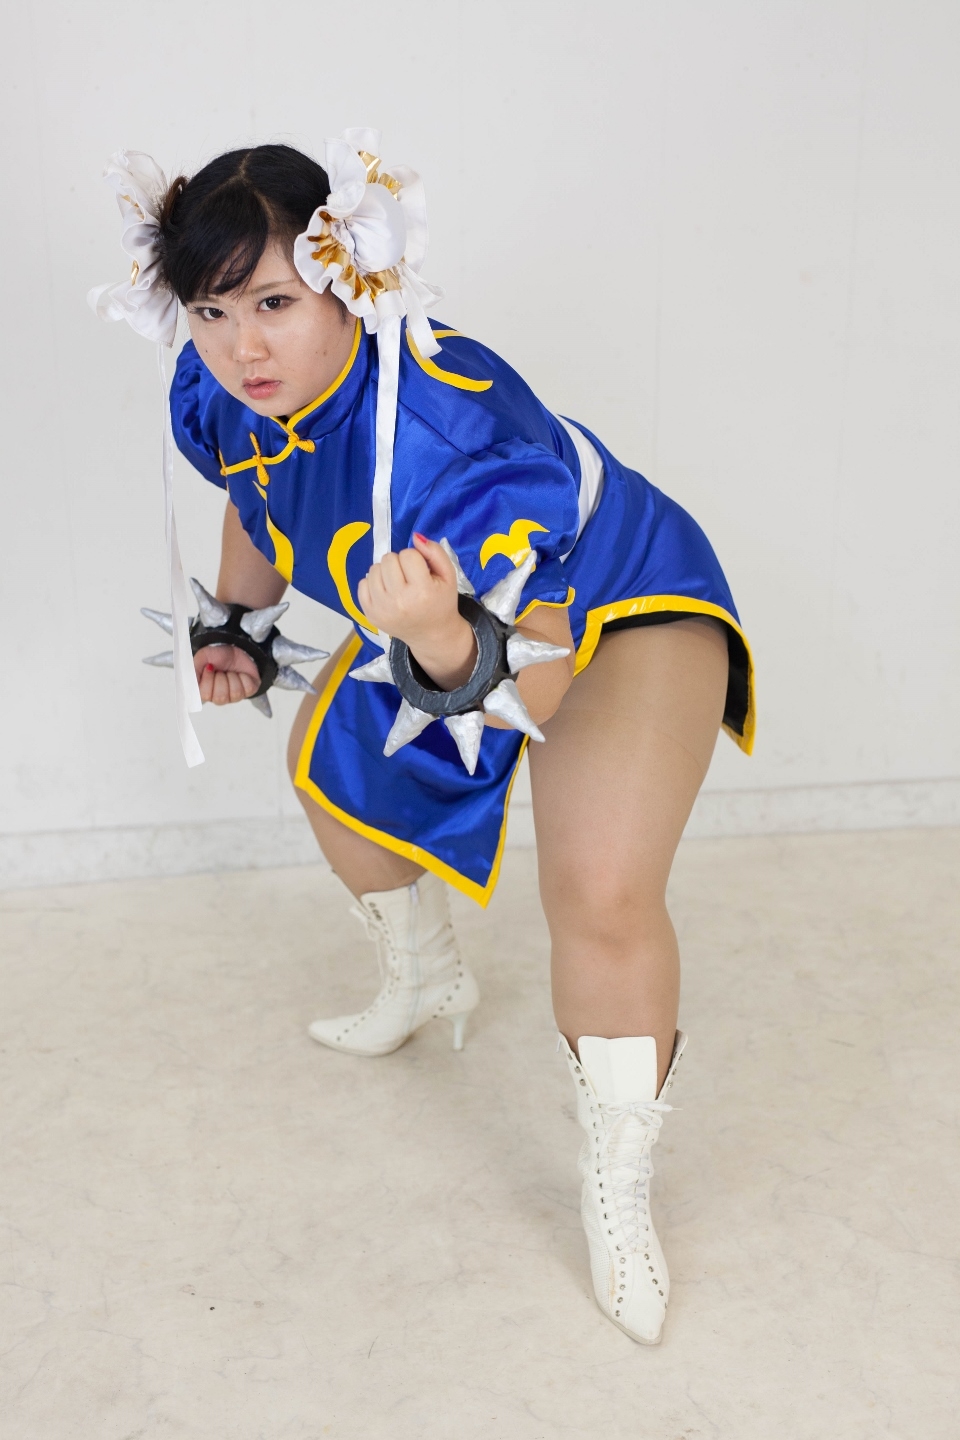 (渡辺さくらん) FIGHT FAT LADY (Sakuran Watanabe) (Mai Shiranui - Fatal Fury) (Chun-Li - Street Fighter) 108